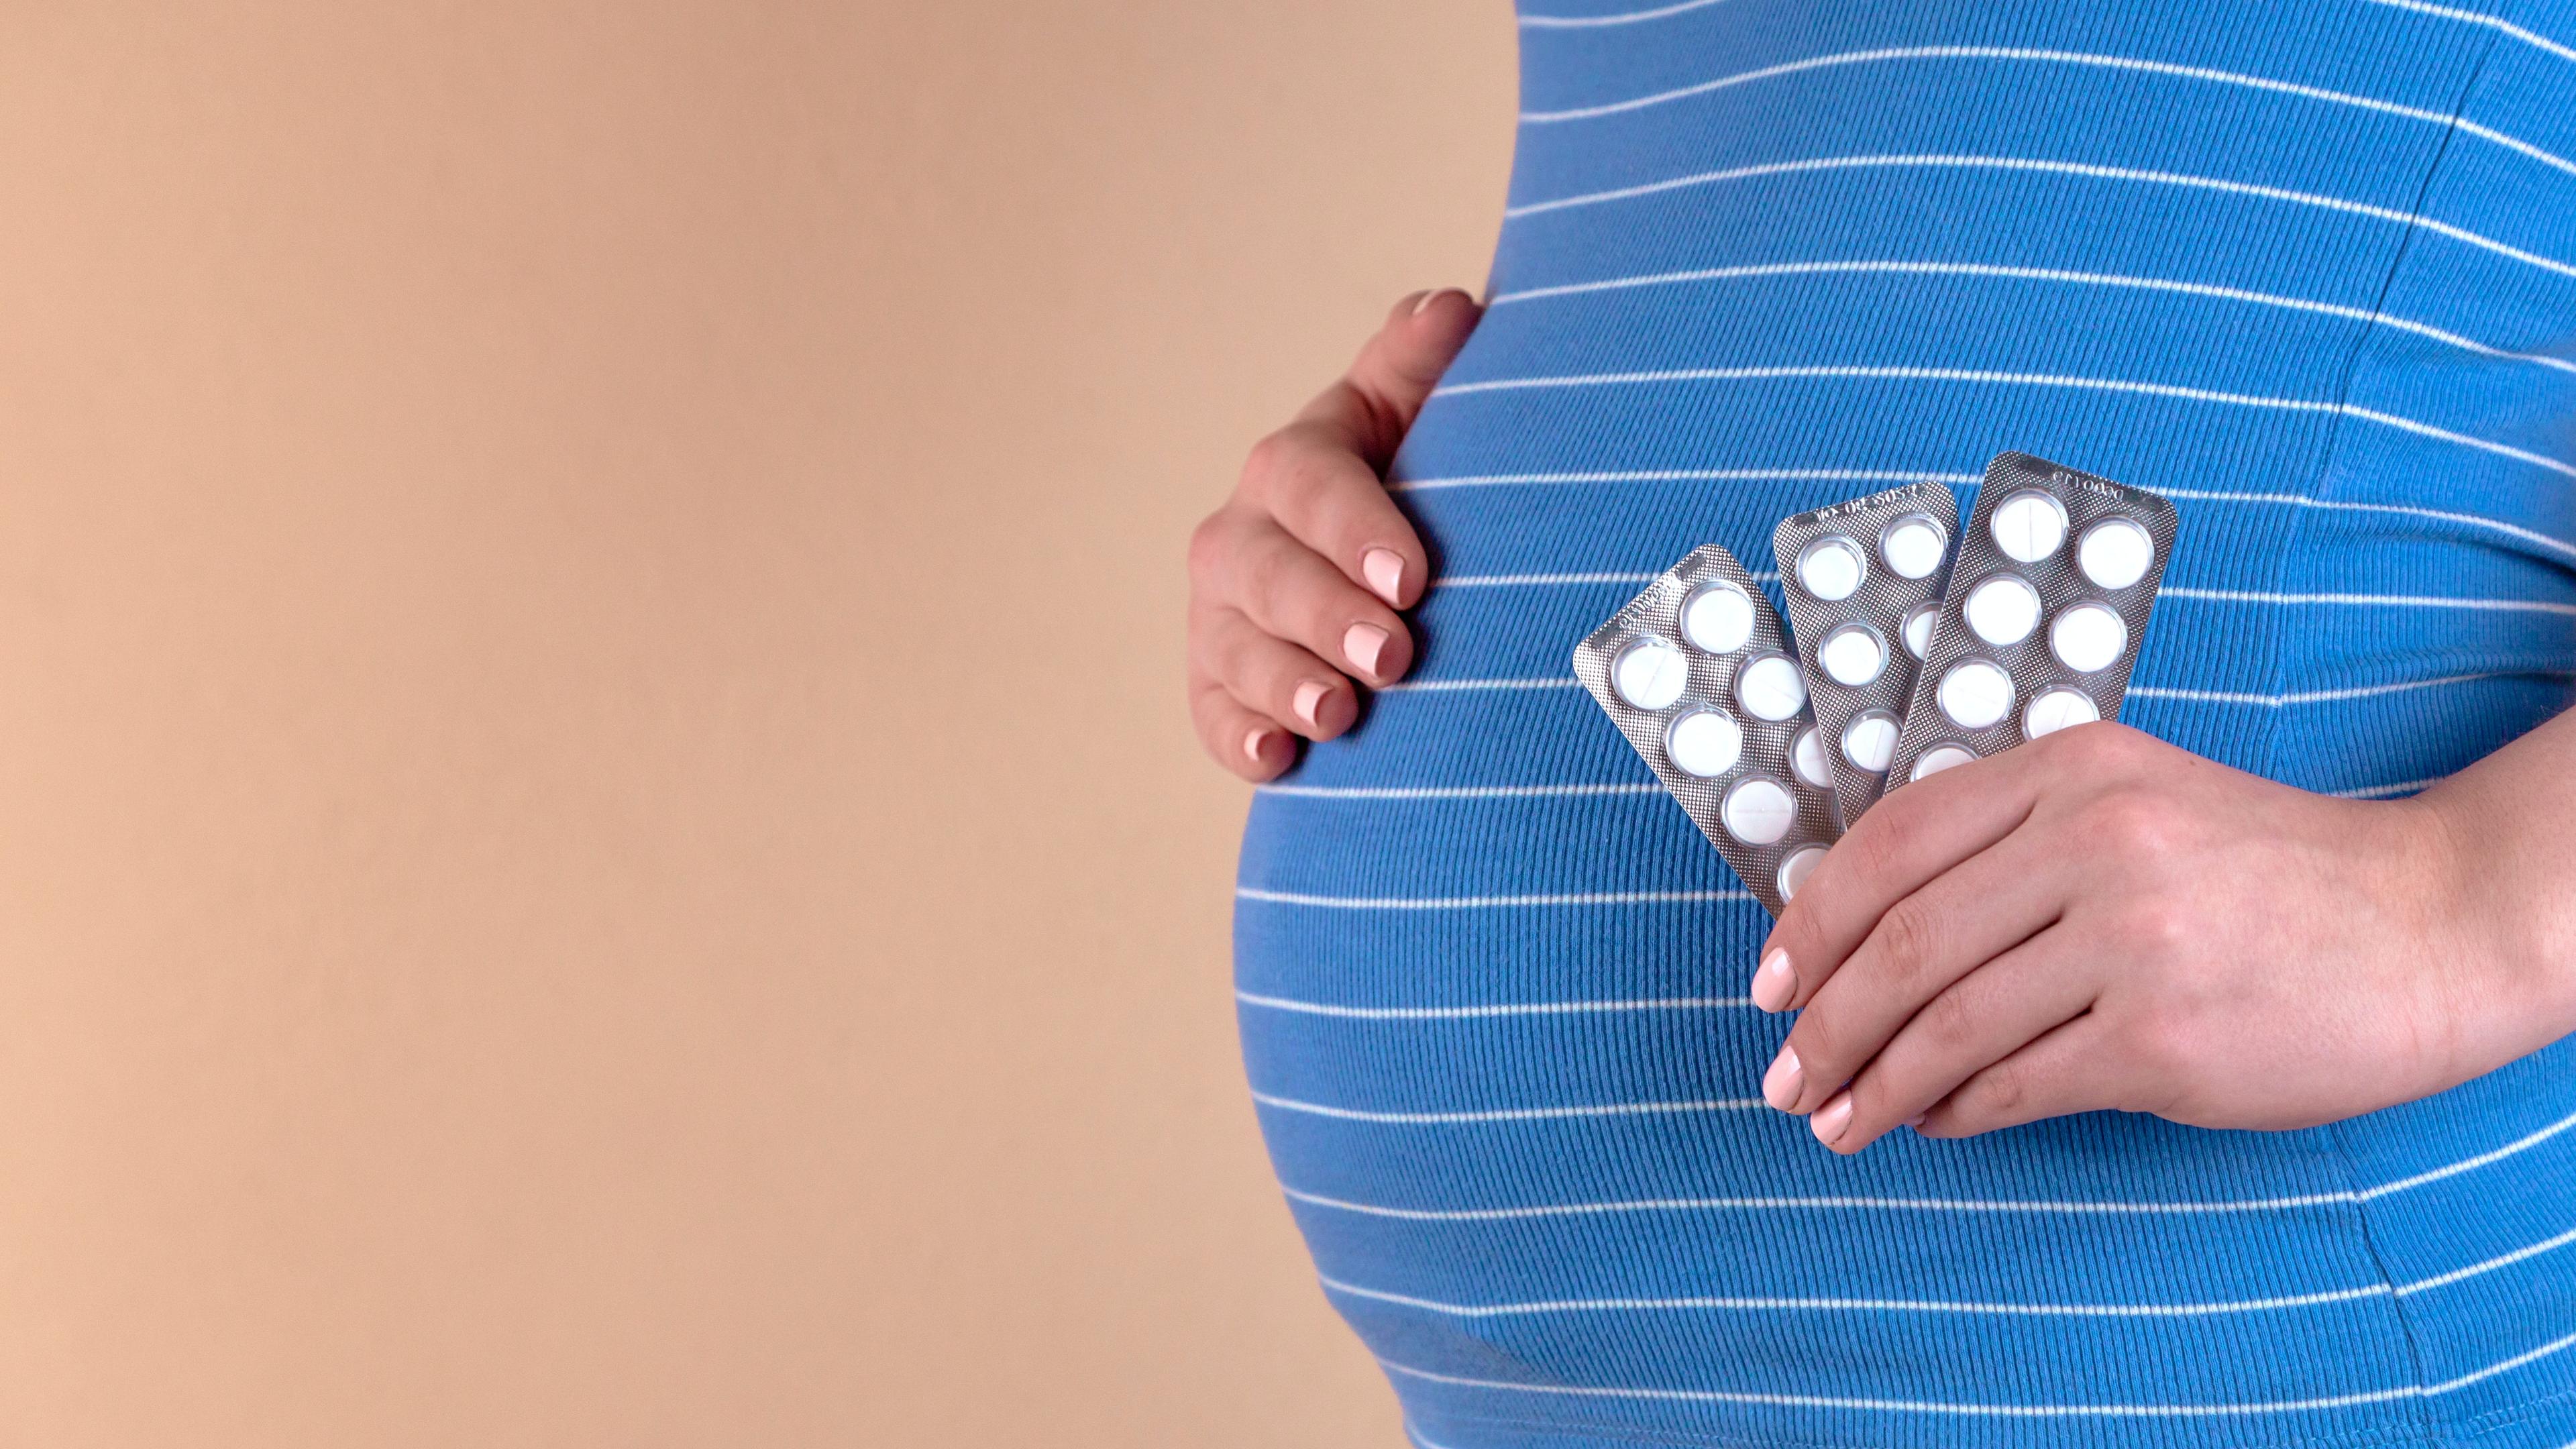 Antybiotyki w ciąży - jakie są bezpieczne i jak je stosować? Leki bezpieczne w ciąży - jakie preparaty może zażywać przyszła mama? Leki bezpieczne w ciąży